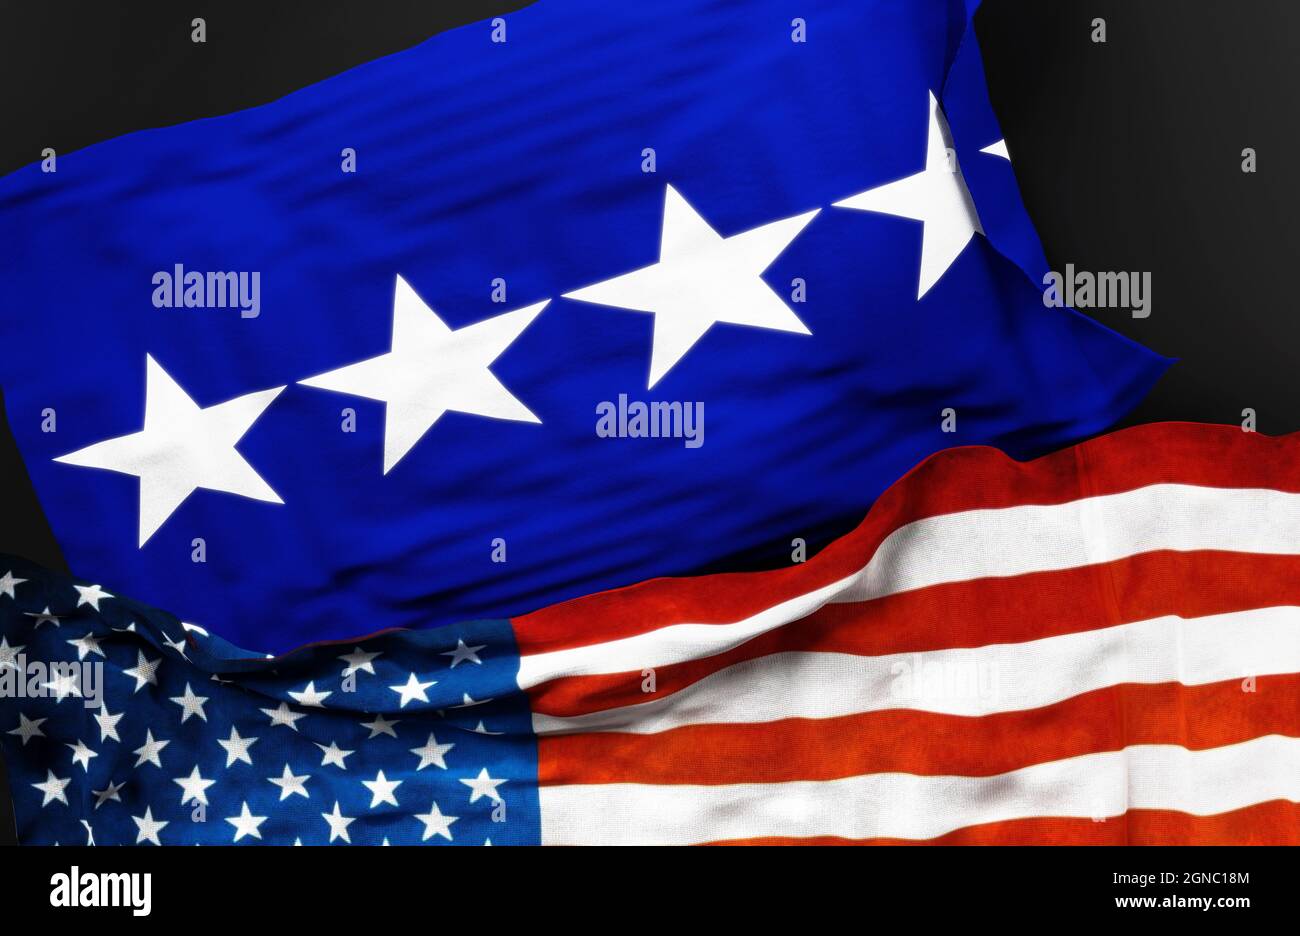 Flagge eines Generals der US-Luftwaffe zusammen mit einer Flagge der Vereinigten Staaten von Amerika als Symbol der Einheit zwischen ihnen, 3d-Illustration Stockfoto